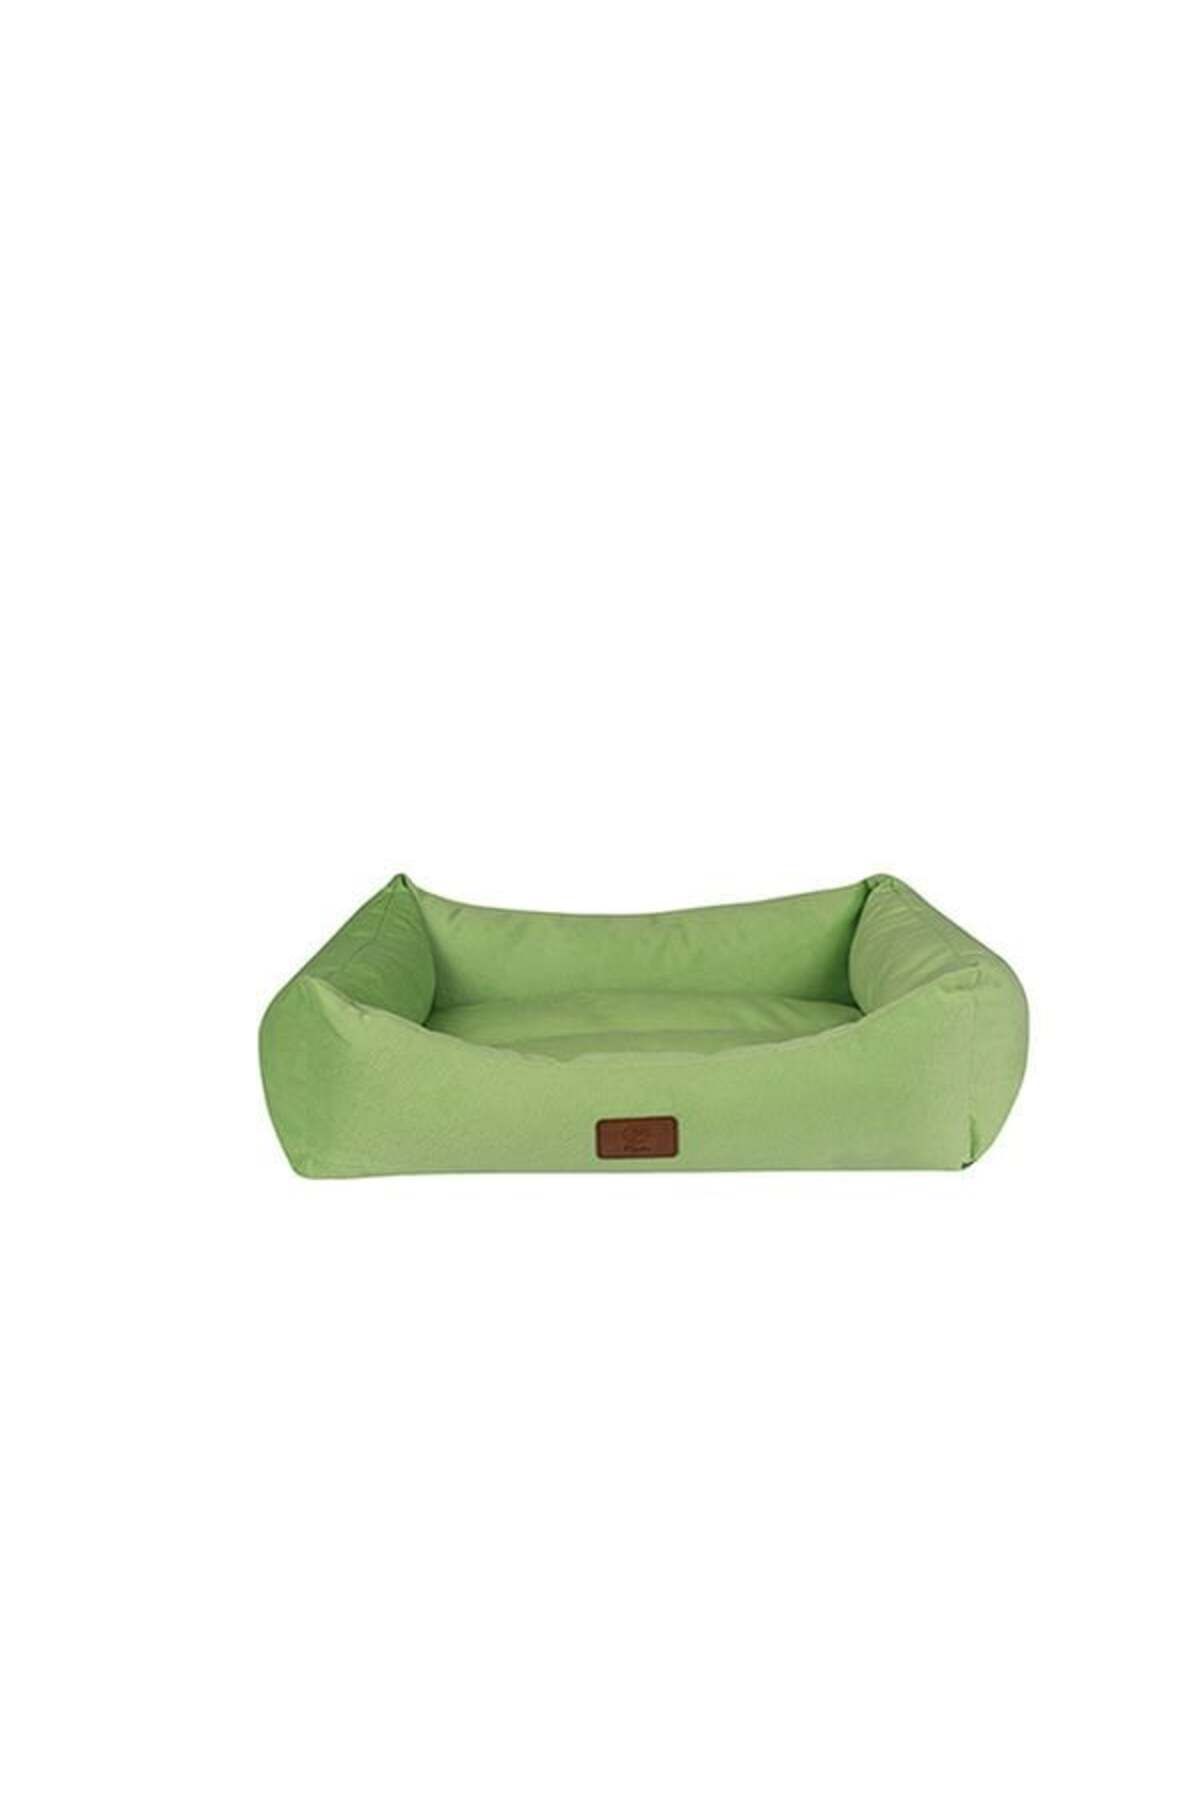 Peggy Luna Köpek Yatağı Fıstık Yeşili Medium 65x45x20 Cm - LUO3M